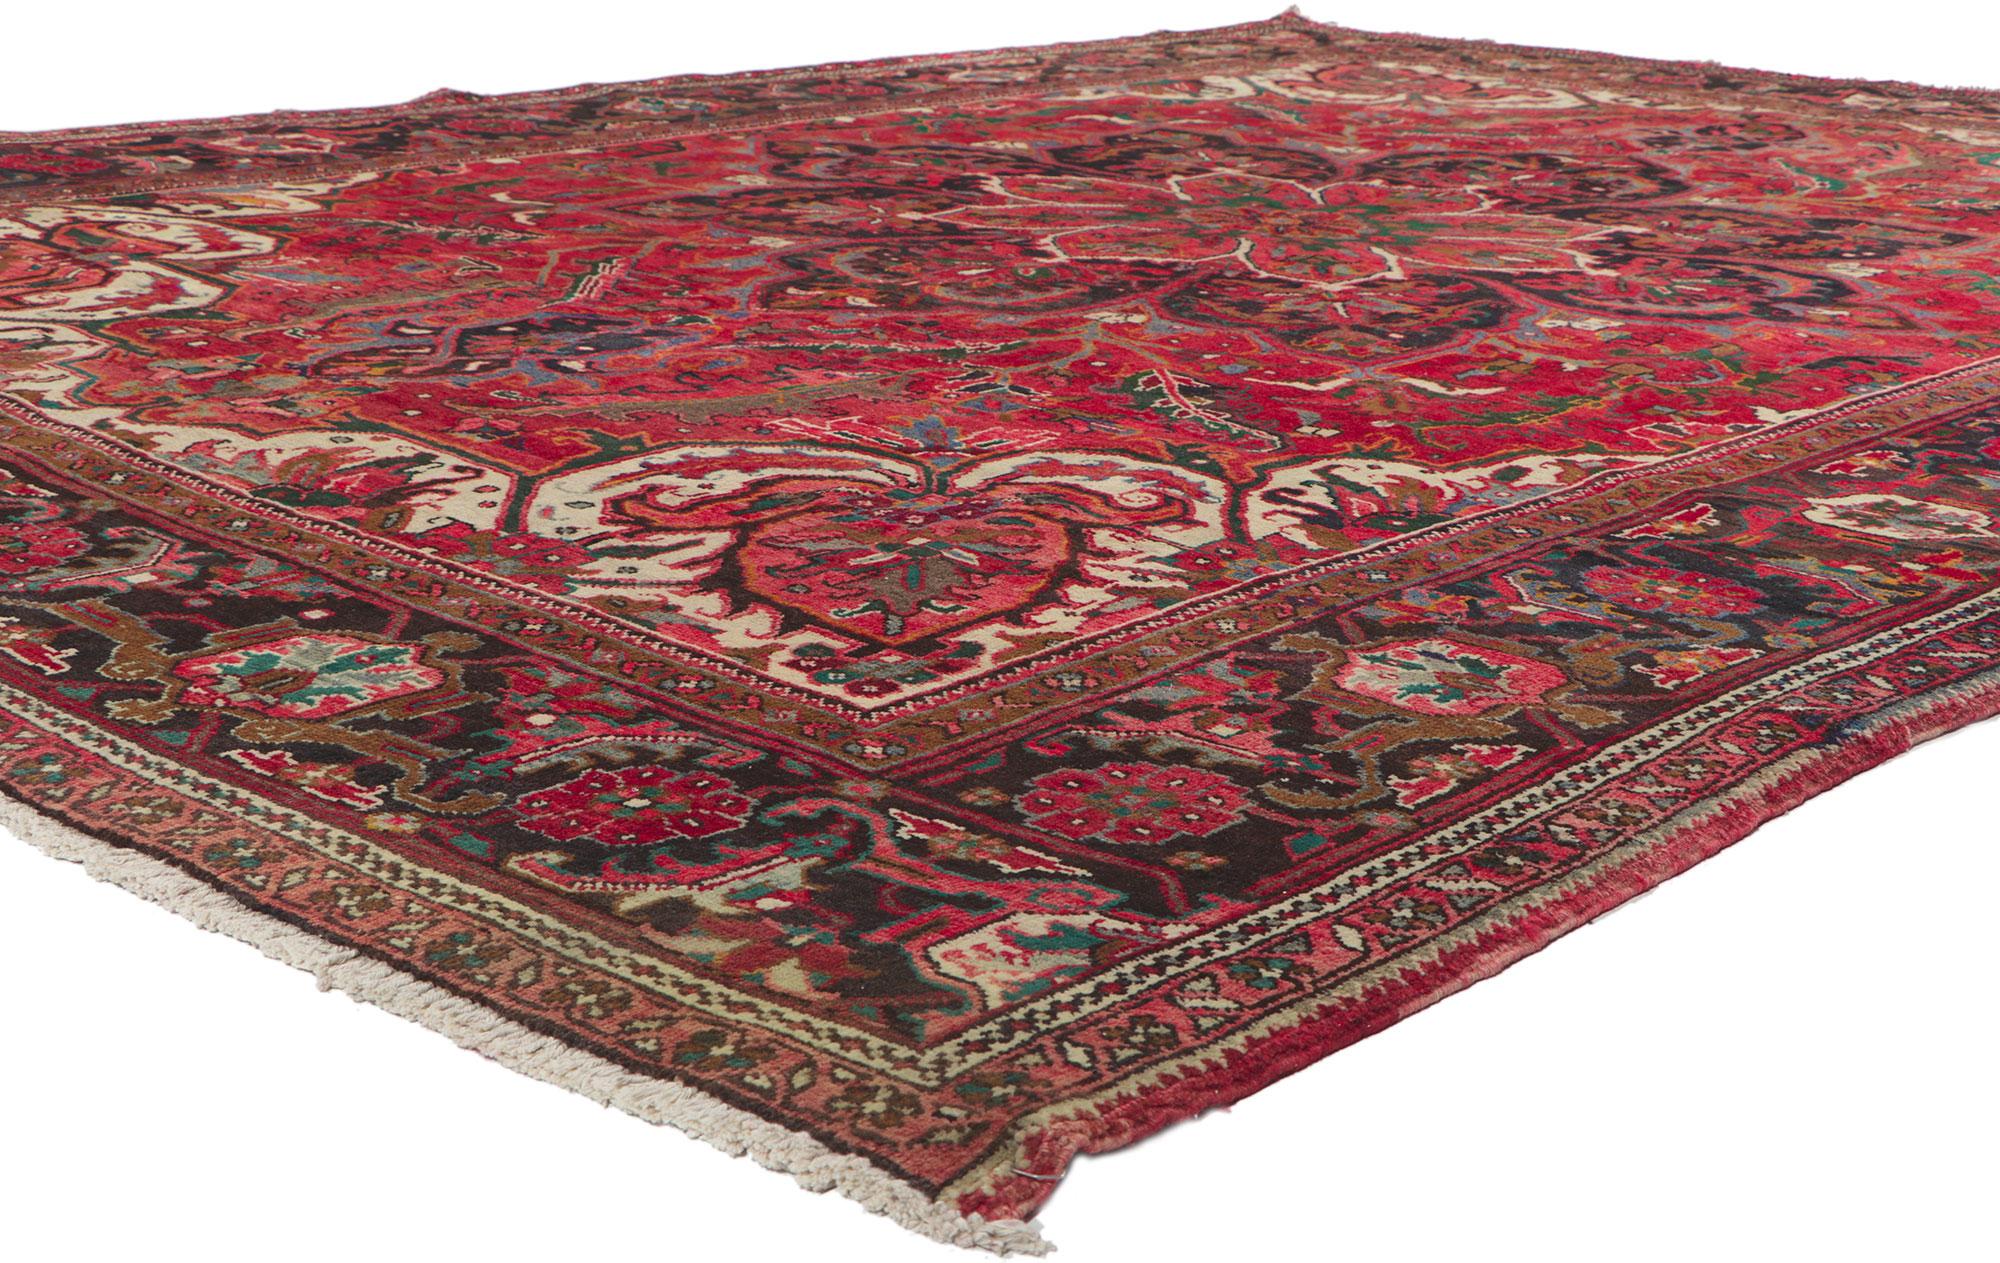 61171 Tapis persan Vintage Heriz, 09'05 x 12'05. Chaleureux et accueillant avec un style classique, ce tapis persan Heriz vintage en laine nouée à la main charme avec aisance. Le champ rouge abrasé présente un médaillon octogonal concentrique